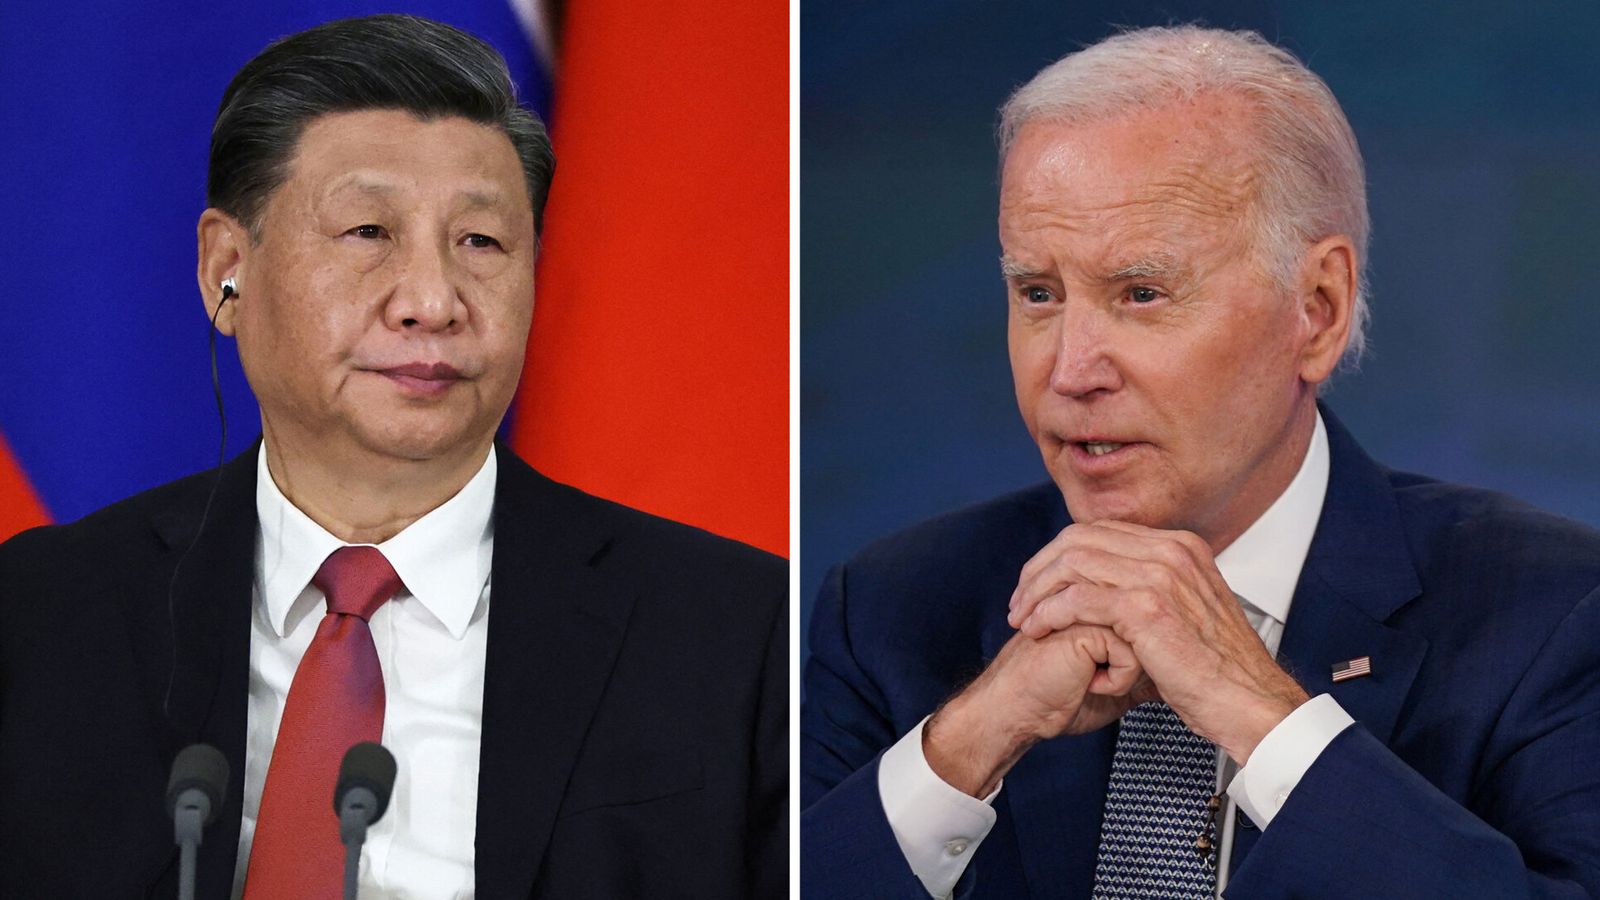 Поскольку отношения между Соединенными Штатами и Китаем ухудшаются, встреча Байдена и Си Цзиньпина стала более важной, чем когда-либо.